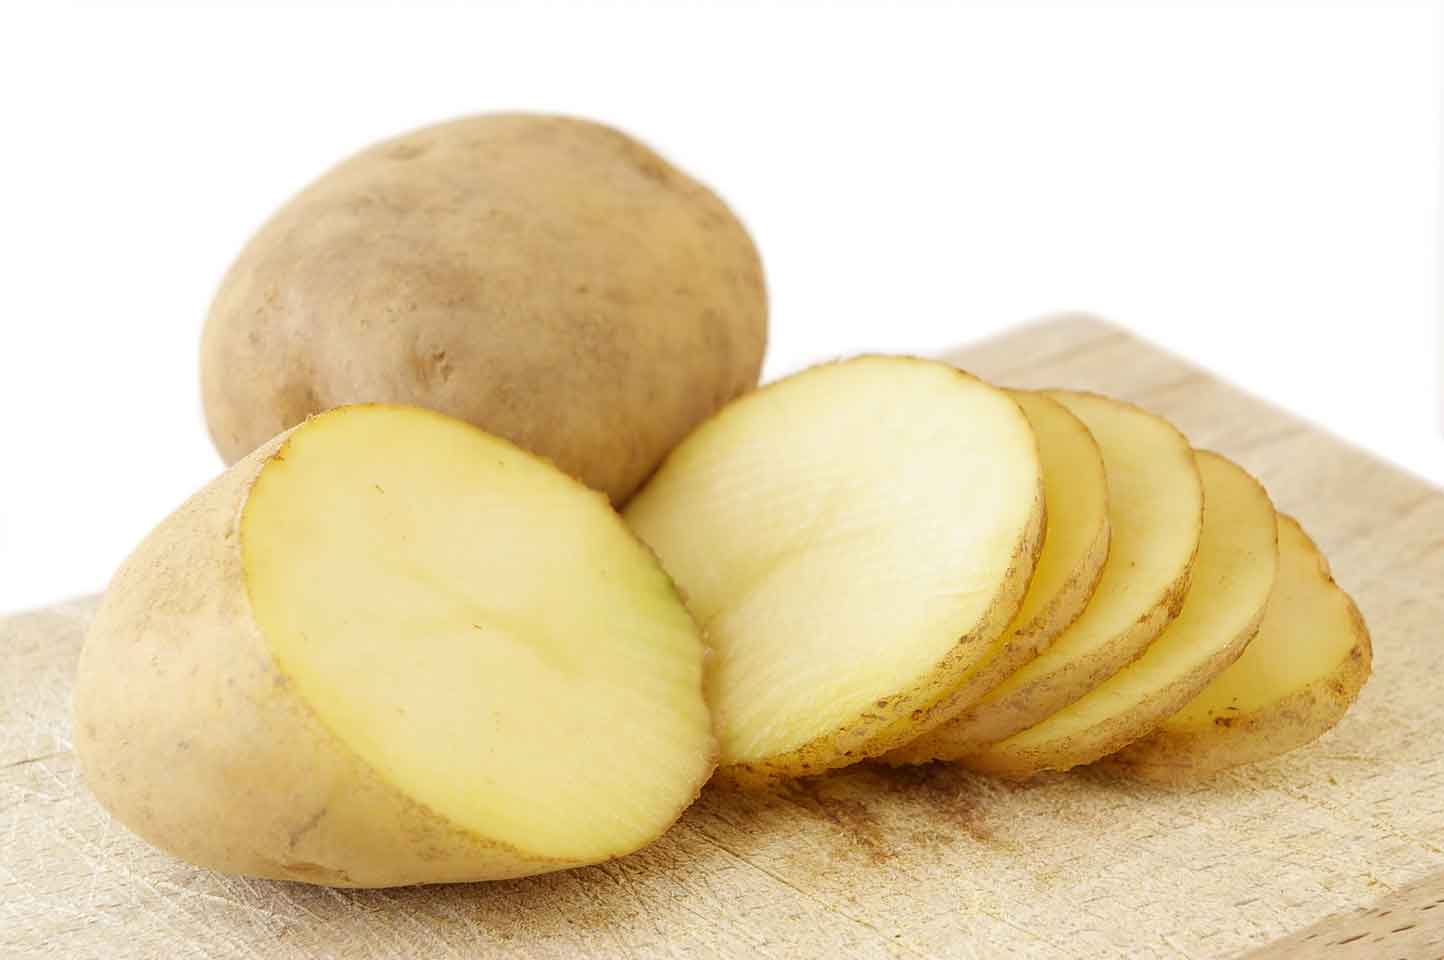   Chỉ nên dùng dao bào nhẹ phần vỏ khoai tây bên ngoài trước khi nấu để giữ chất dinh dưỡng  